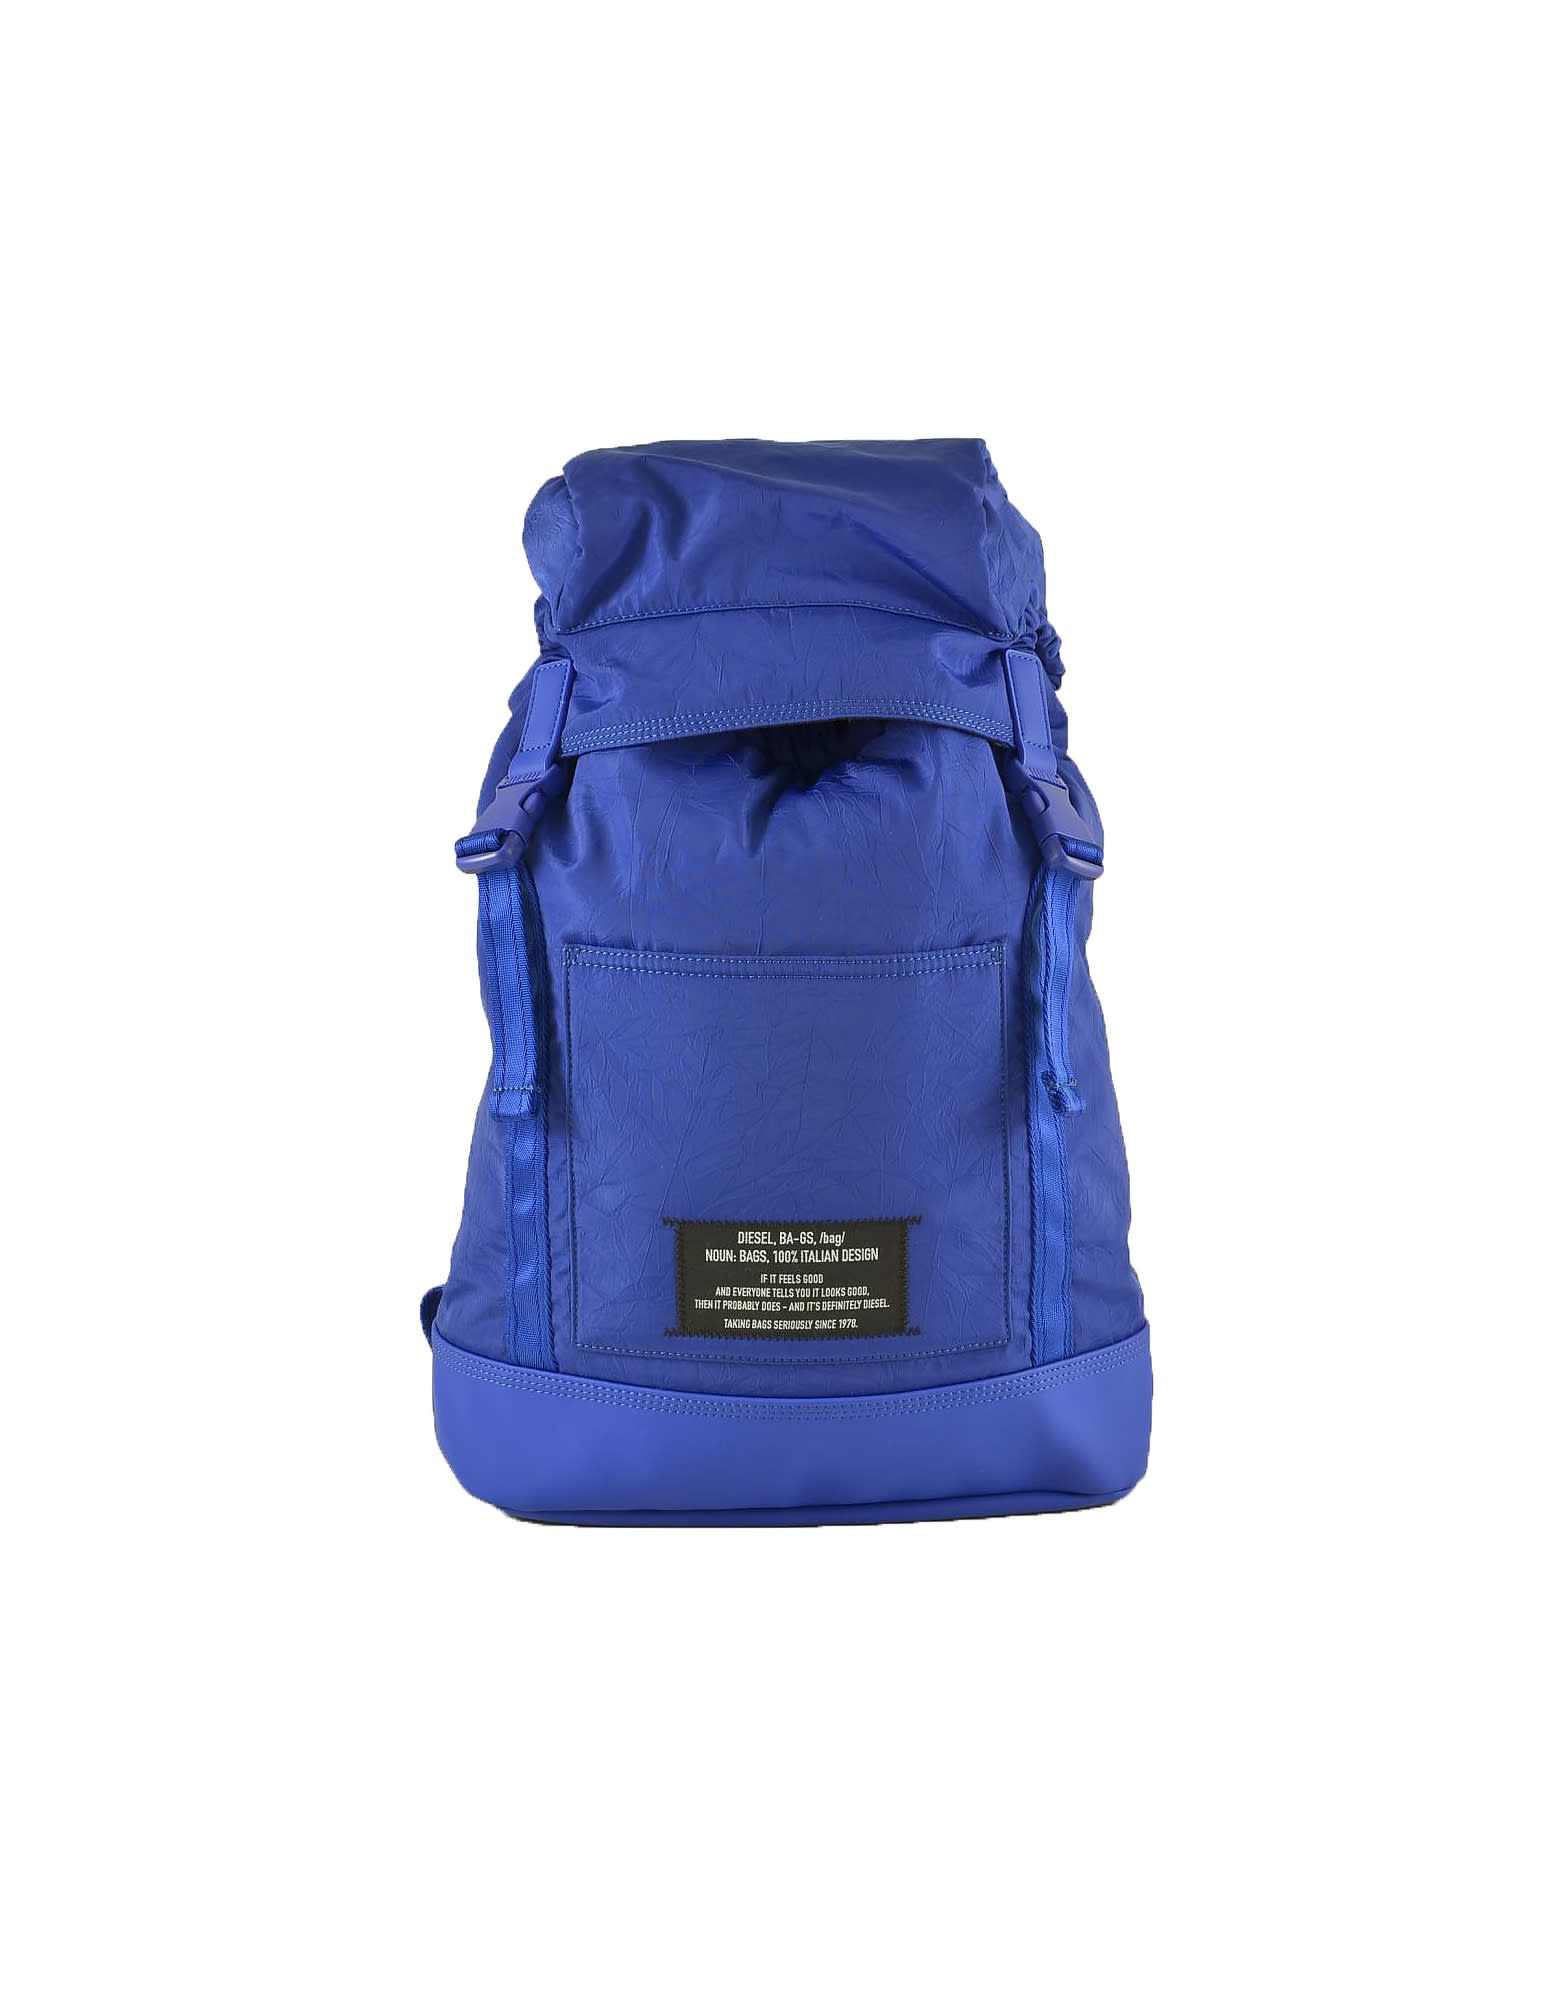 Diesel Mens Bluette Backpack